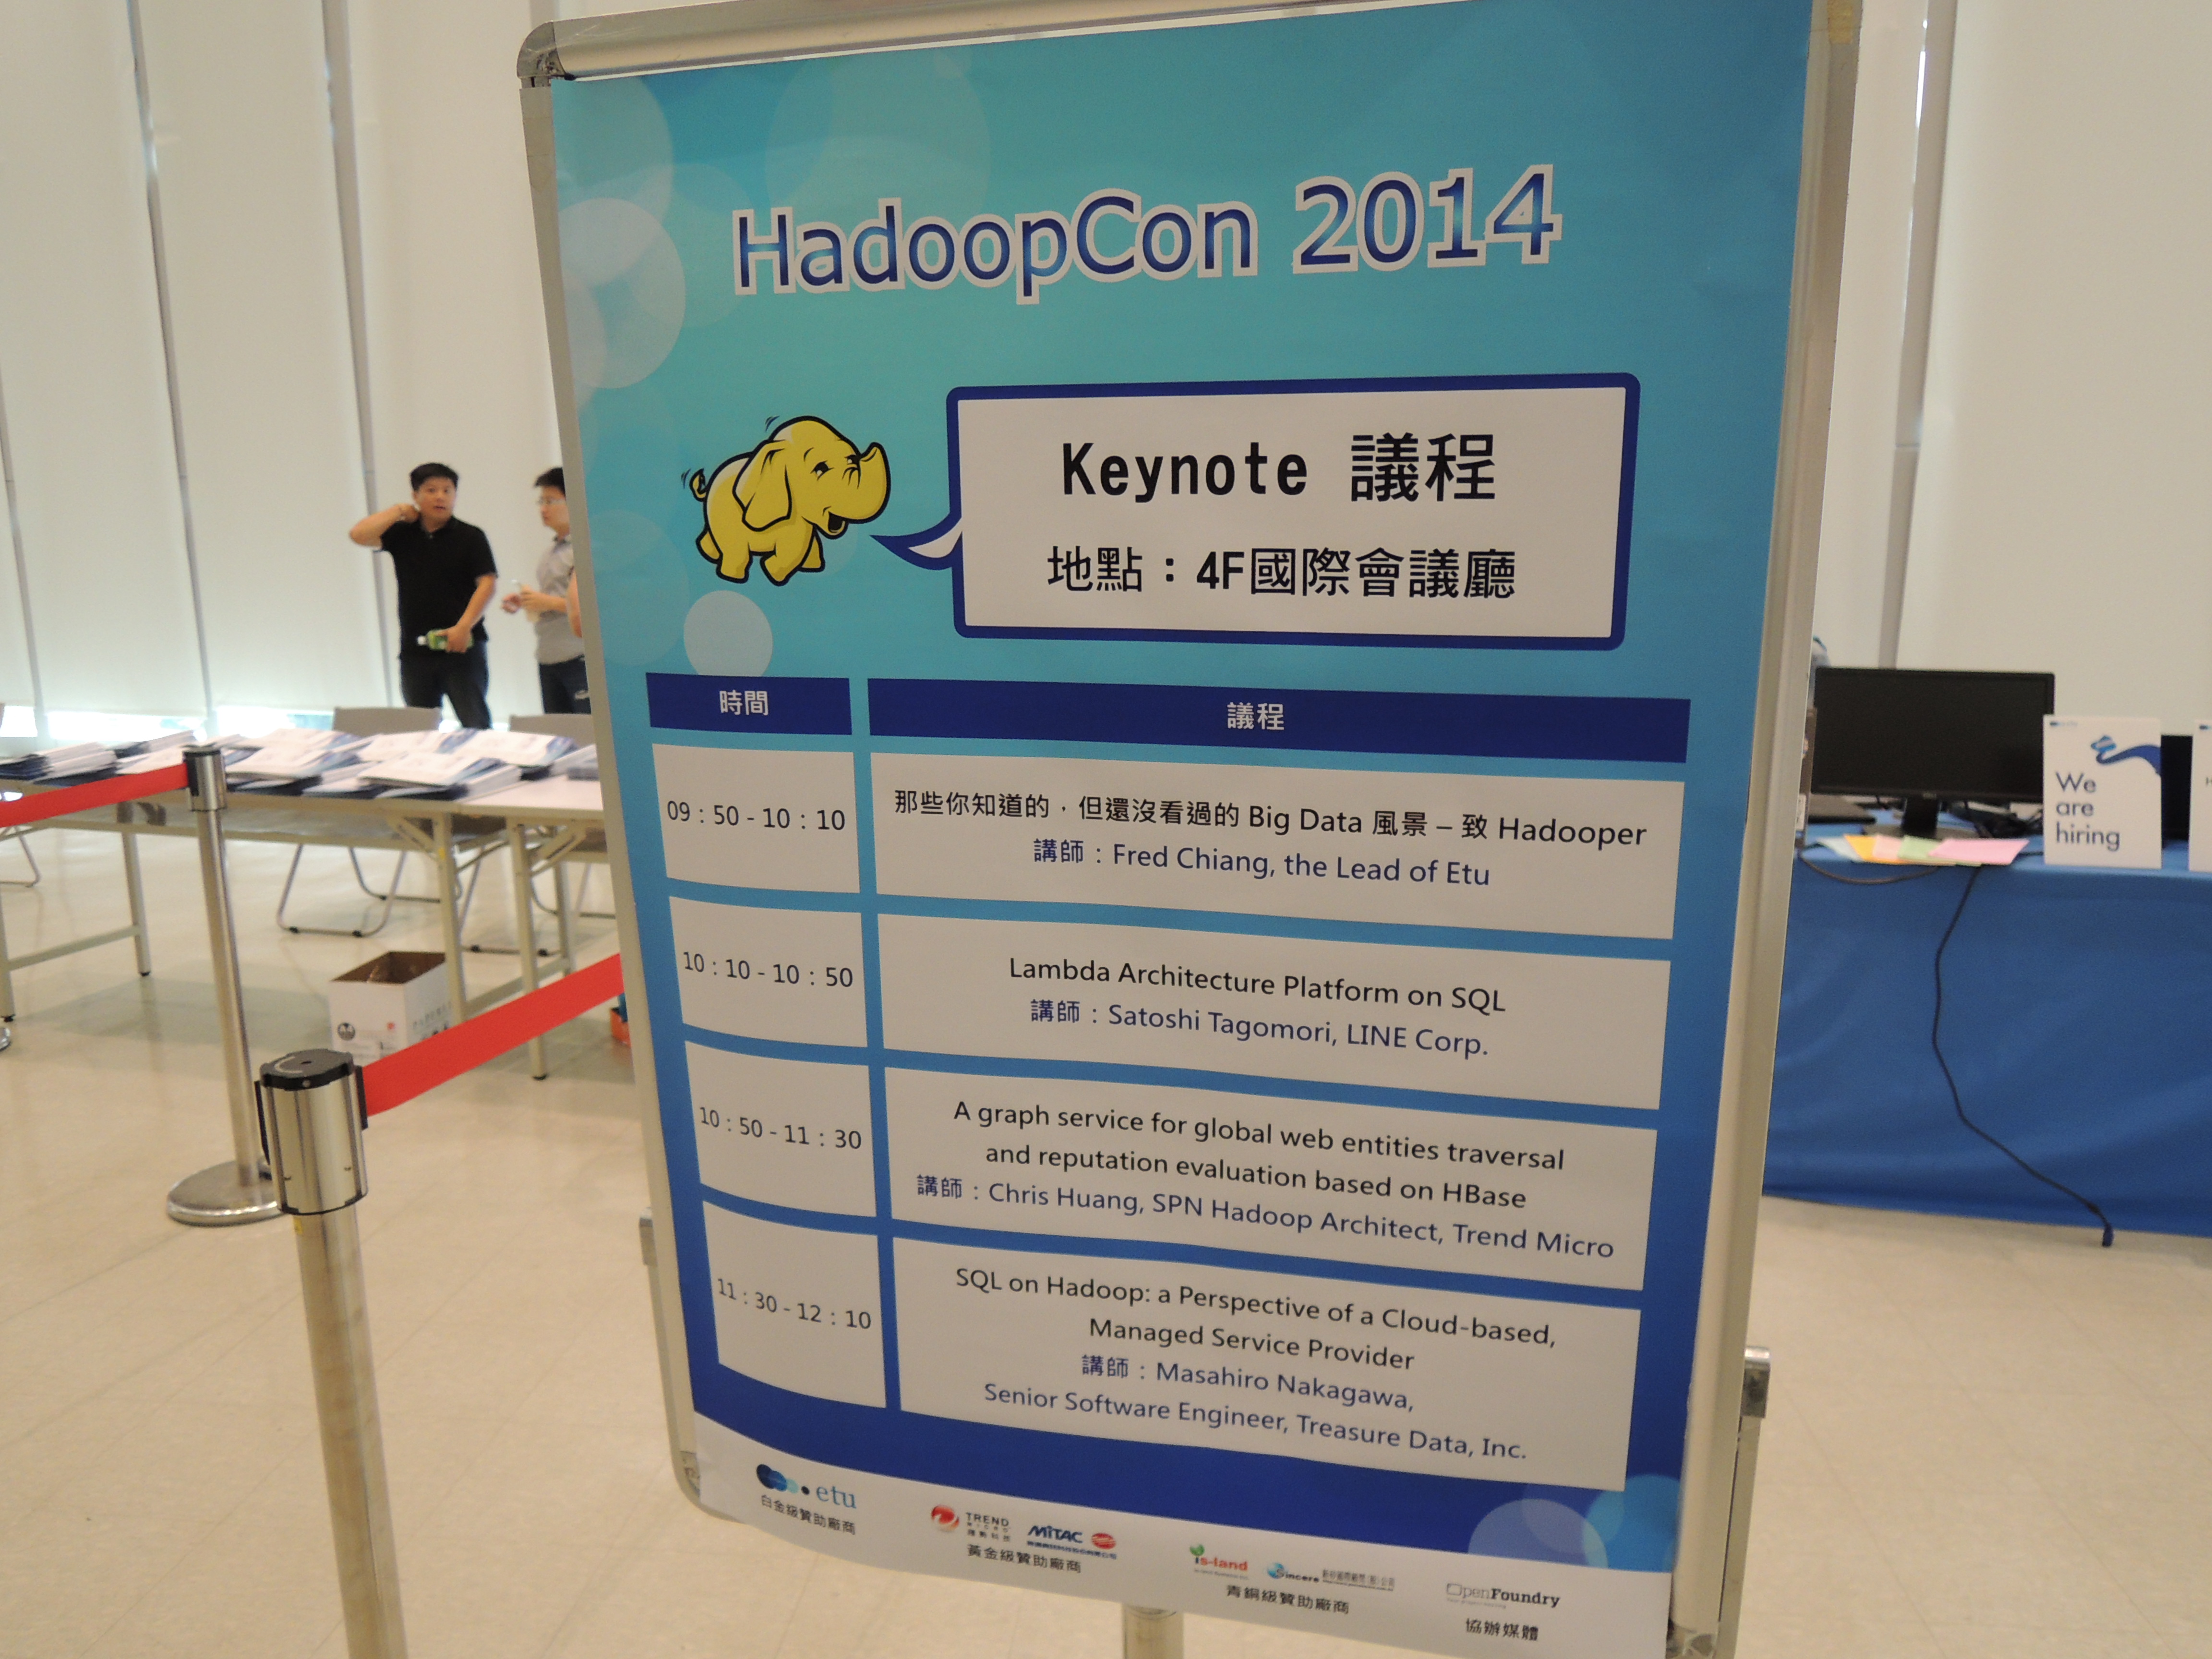 "HadoopCon 2014"